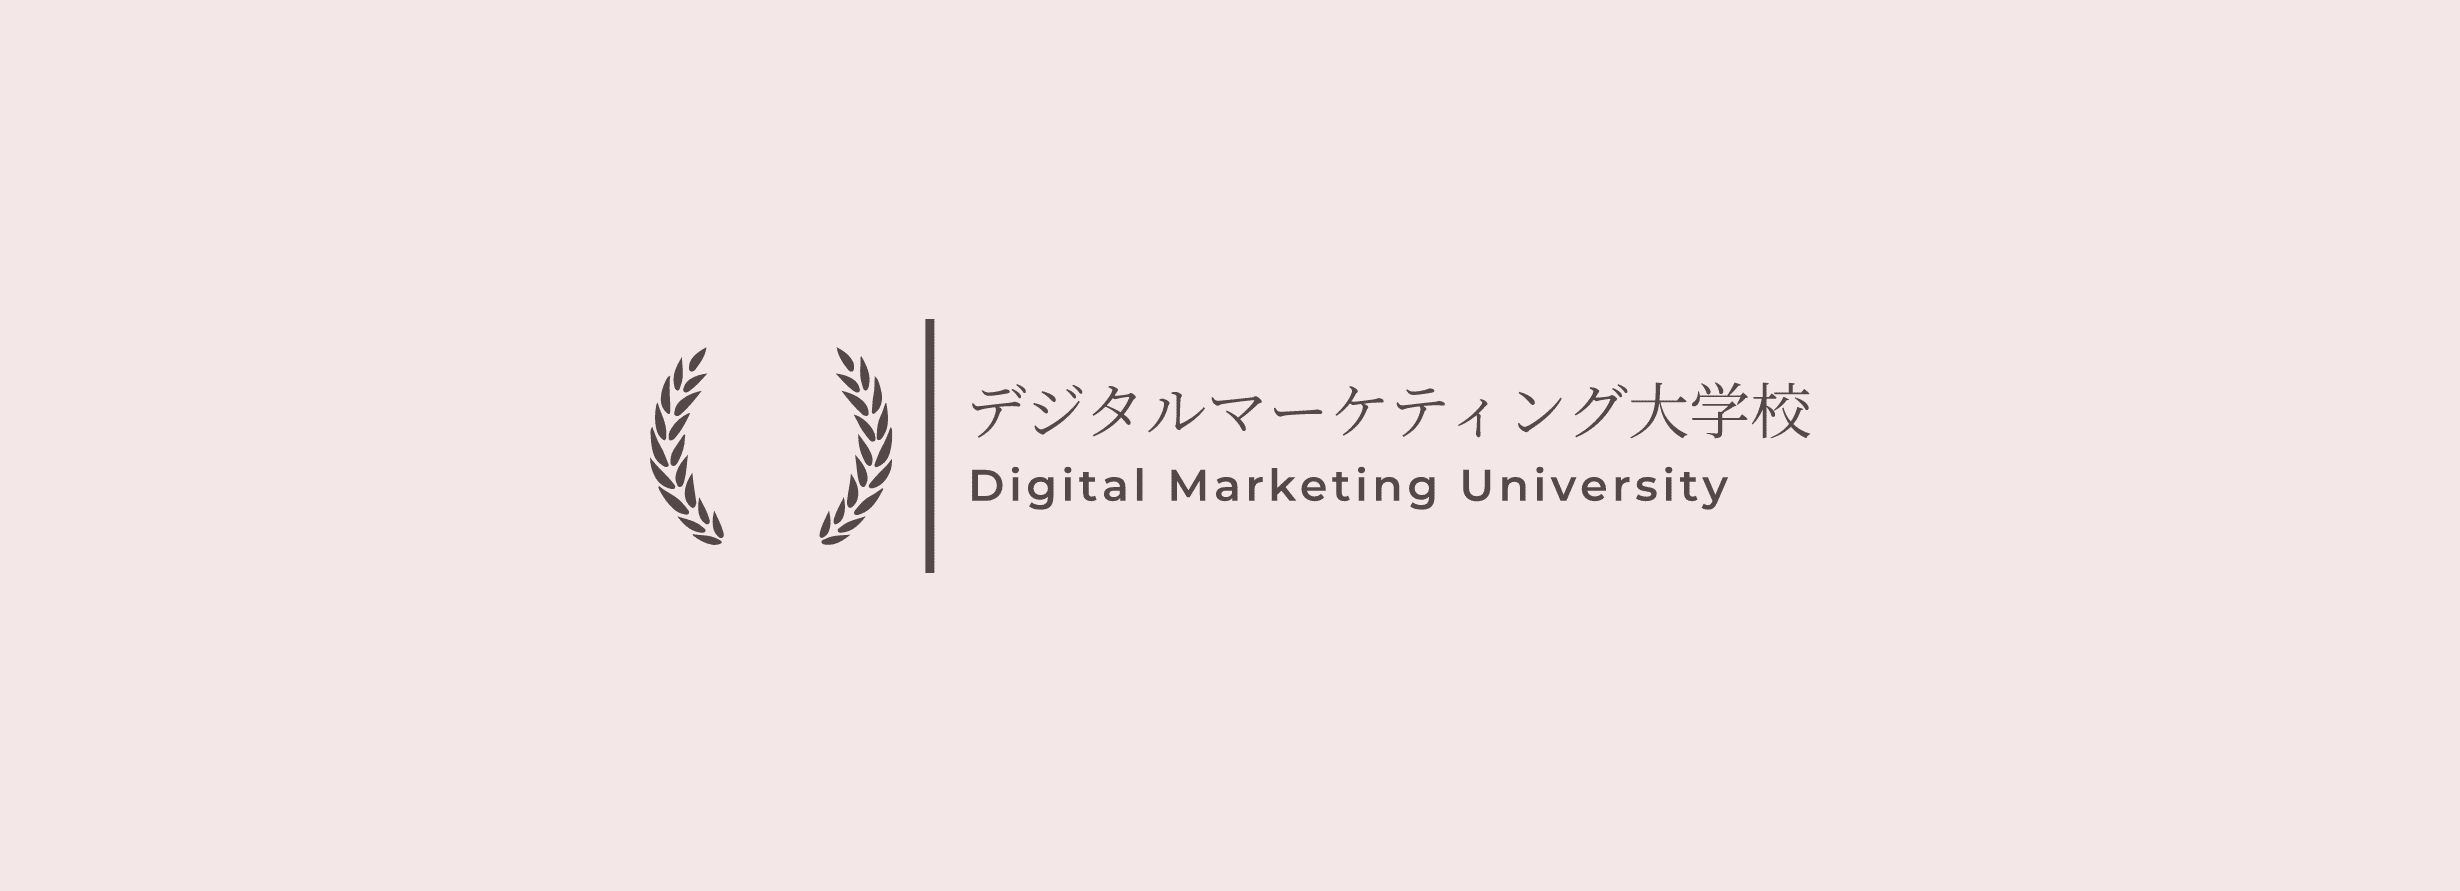 デジタルマーケティング大学校